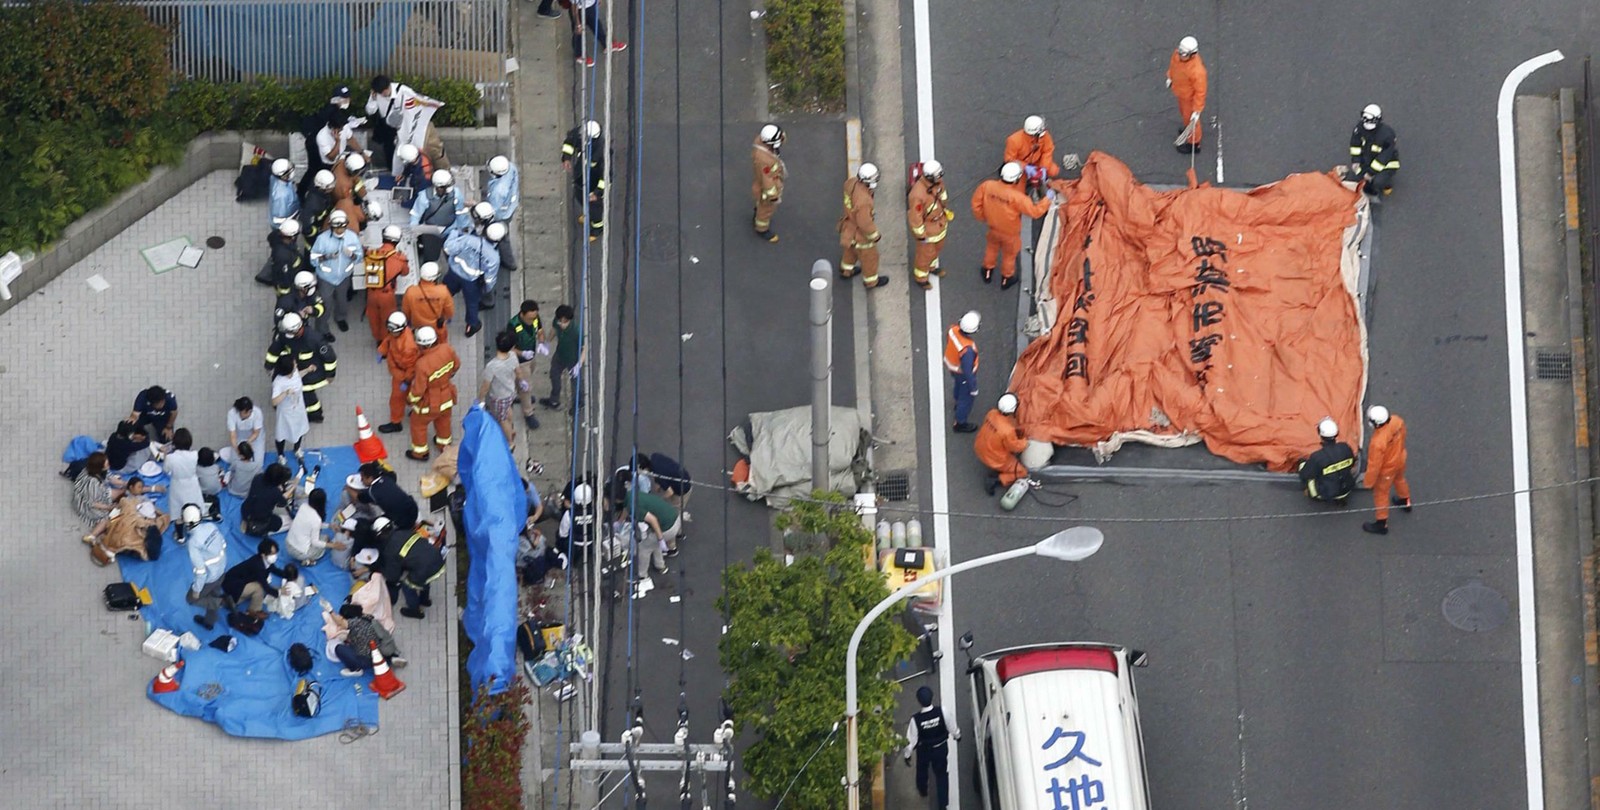 14 crianças esfaqueadas enquanto esperavam por um autocarro no Japão